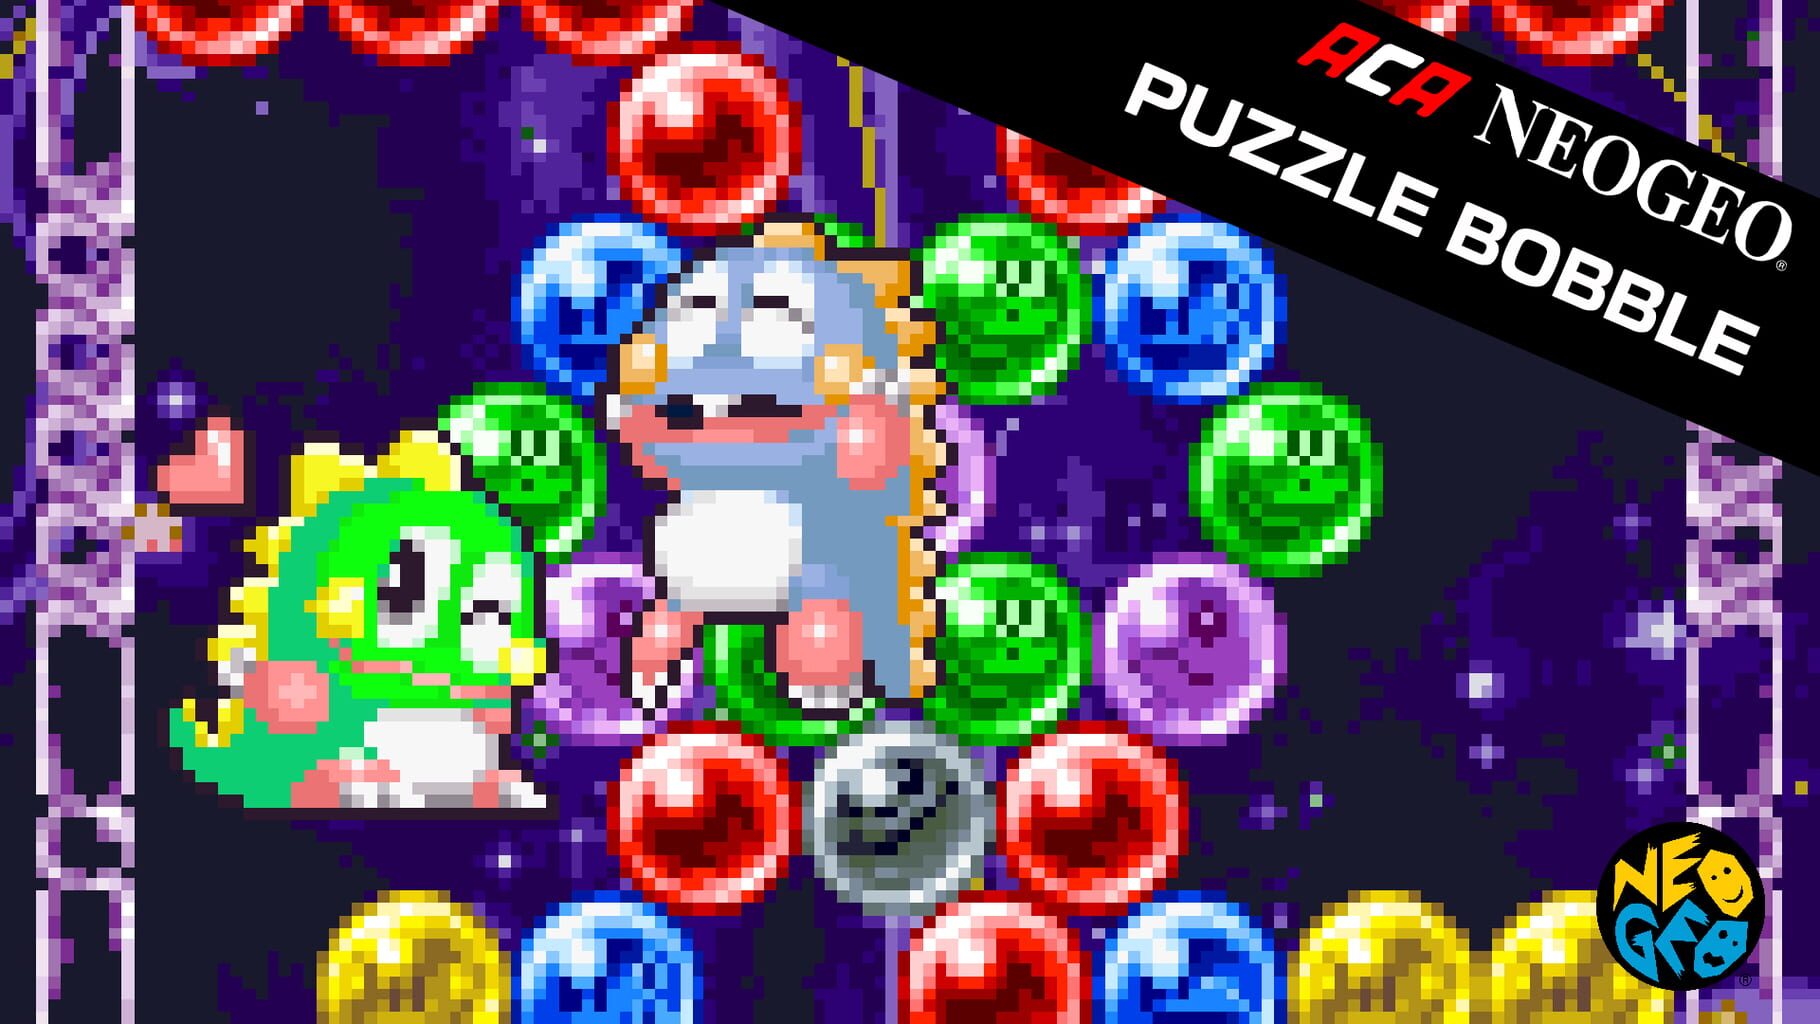 Arte - ACA Neo Geo: Puzzle Bobble